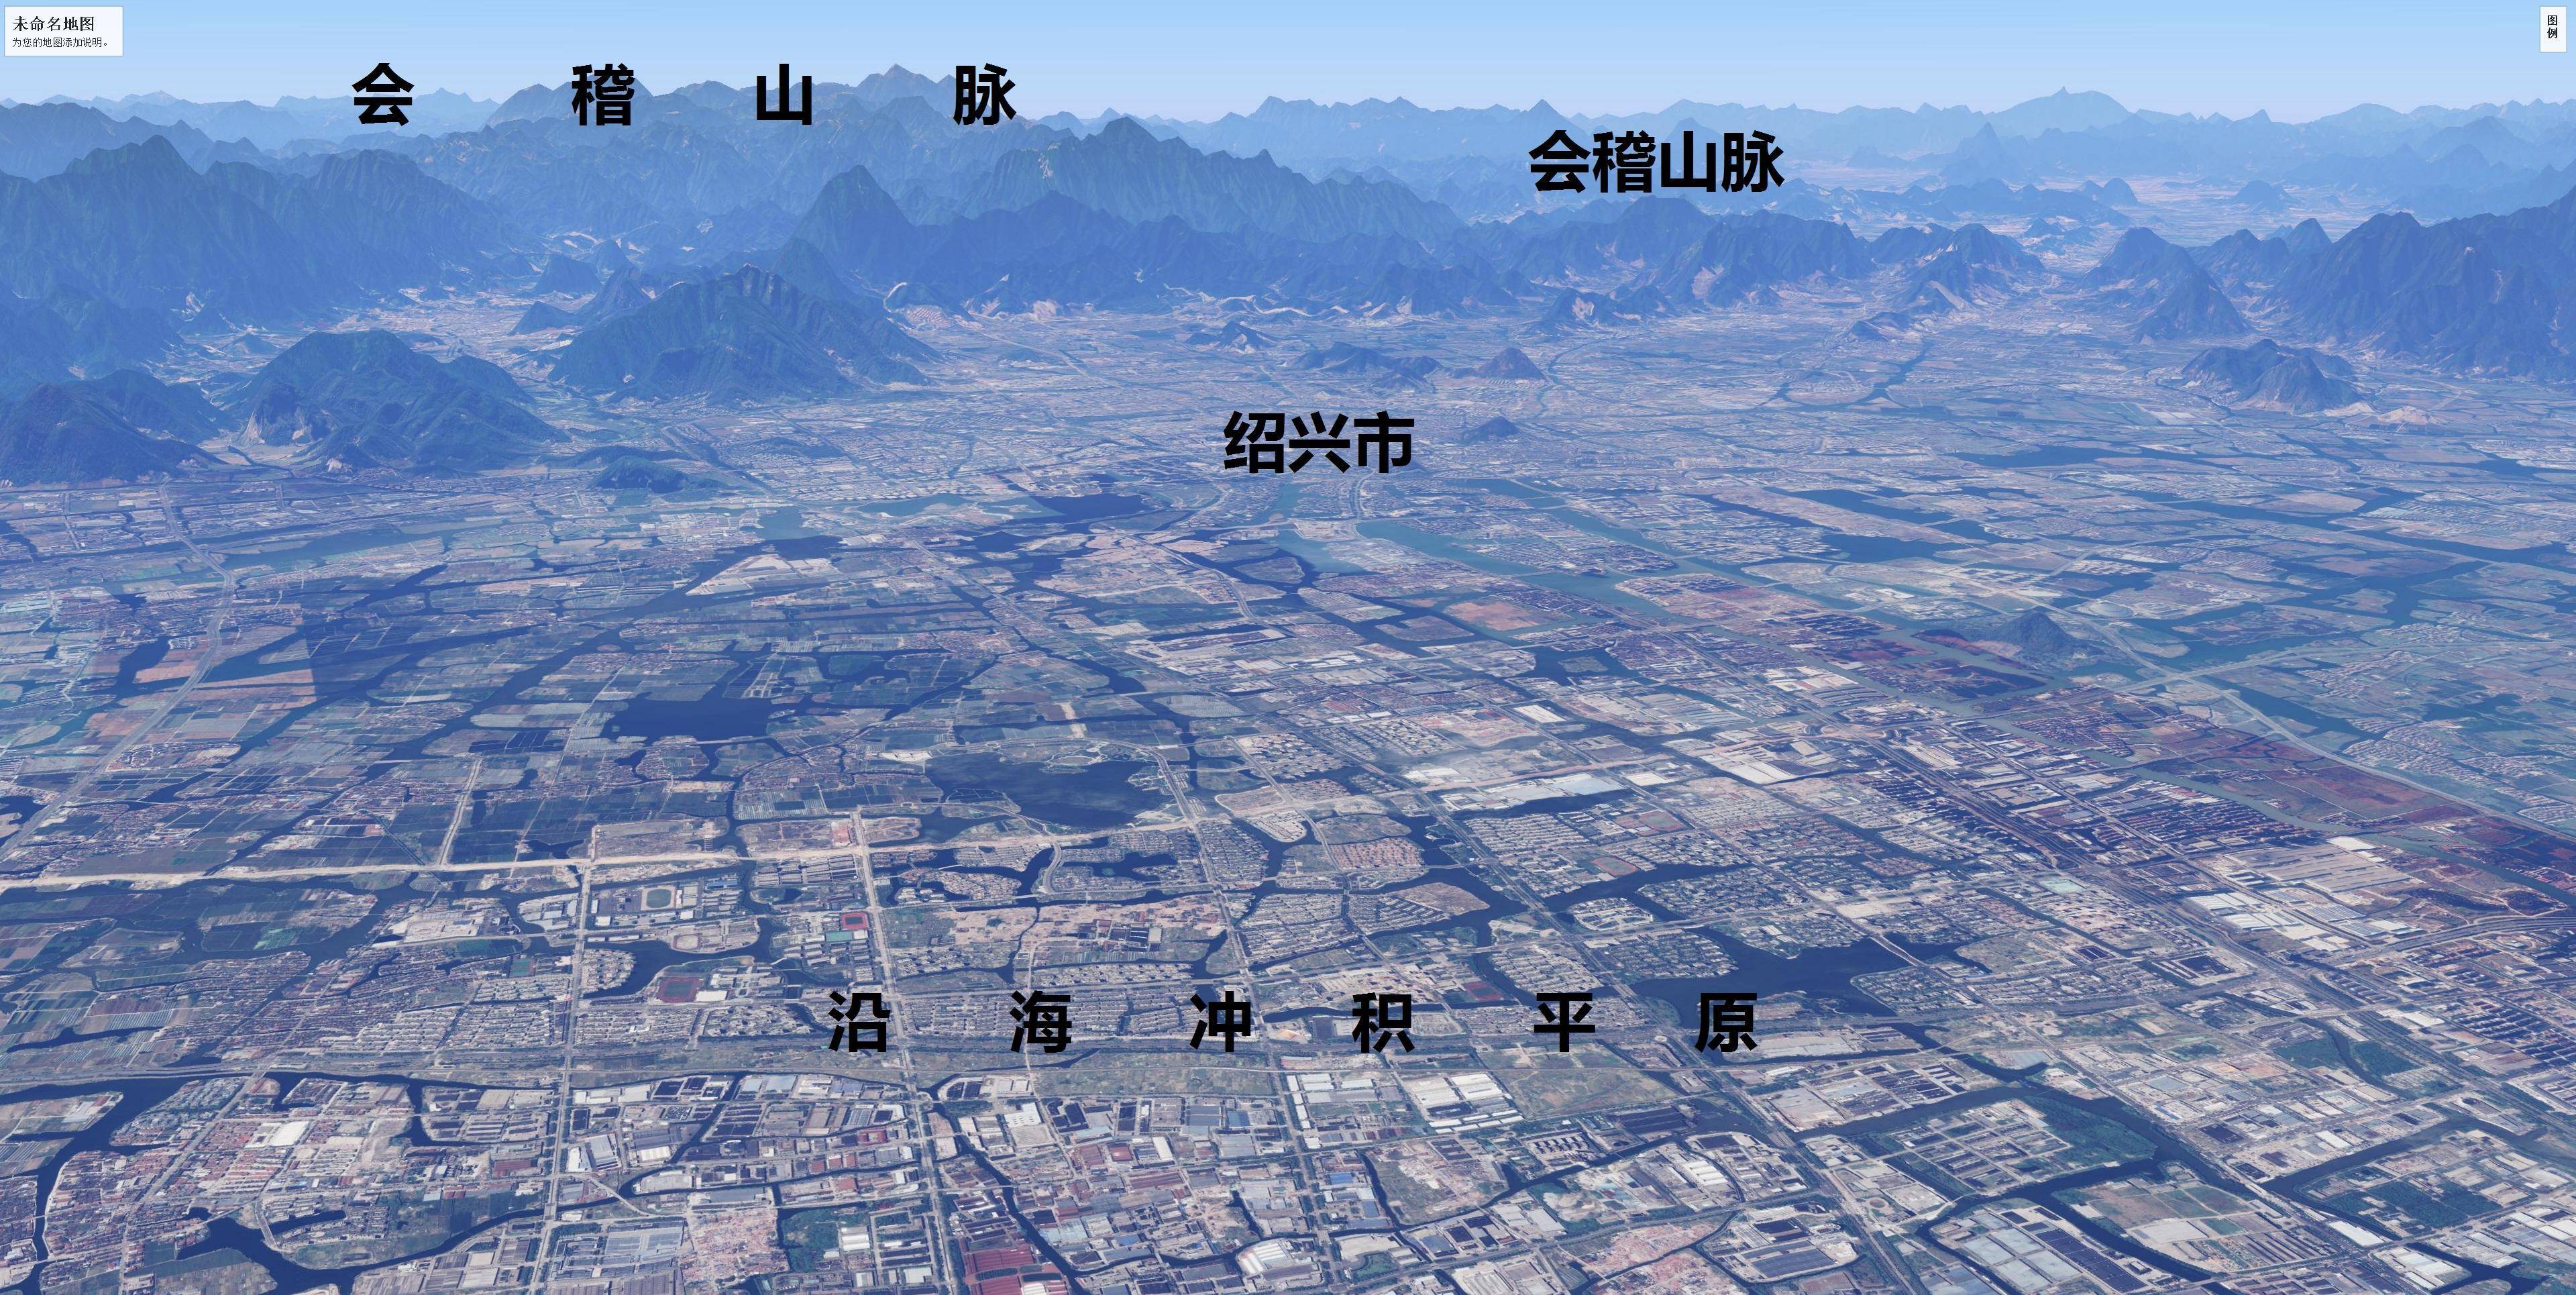 杭州湾沿岸五大城市简易地形图:杭州,嘉兴,绍兴,宁波和舟山